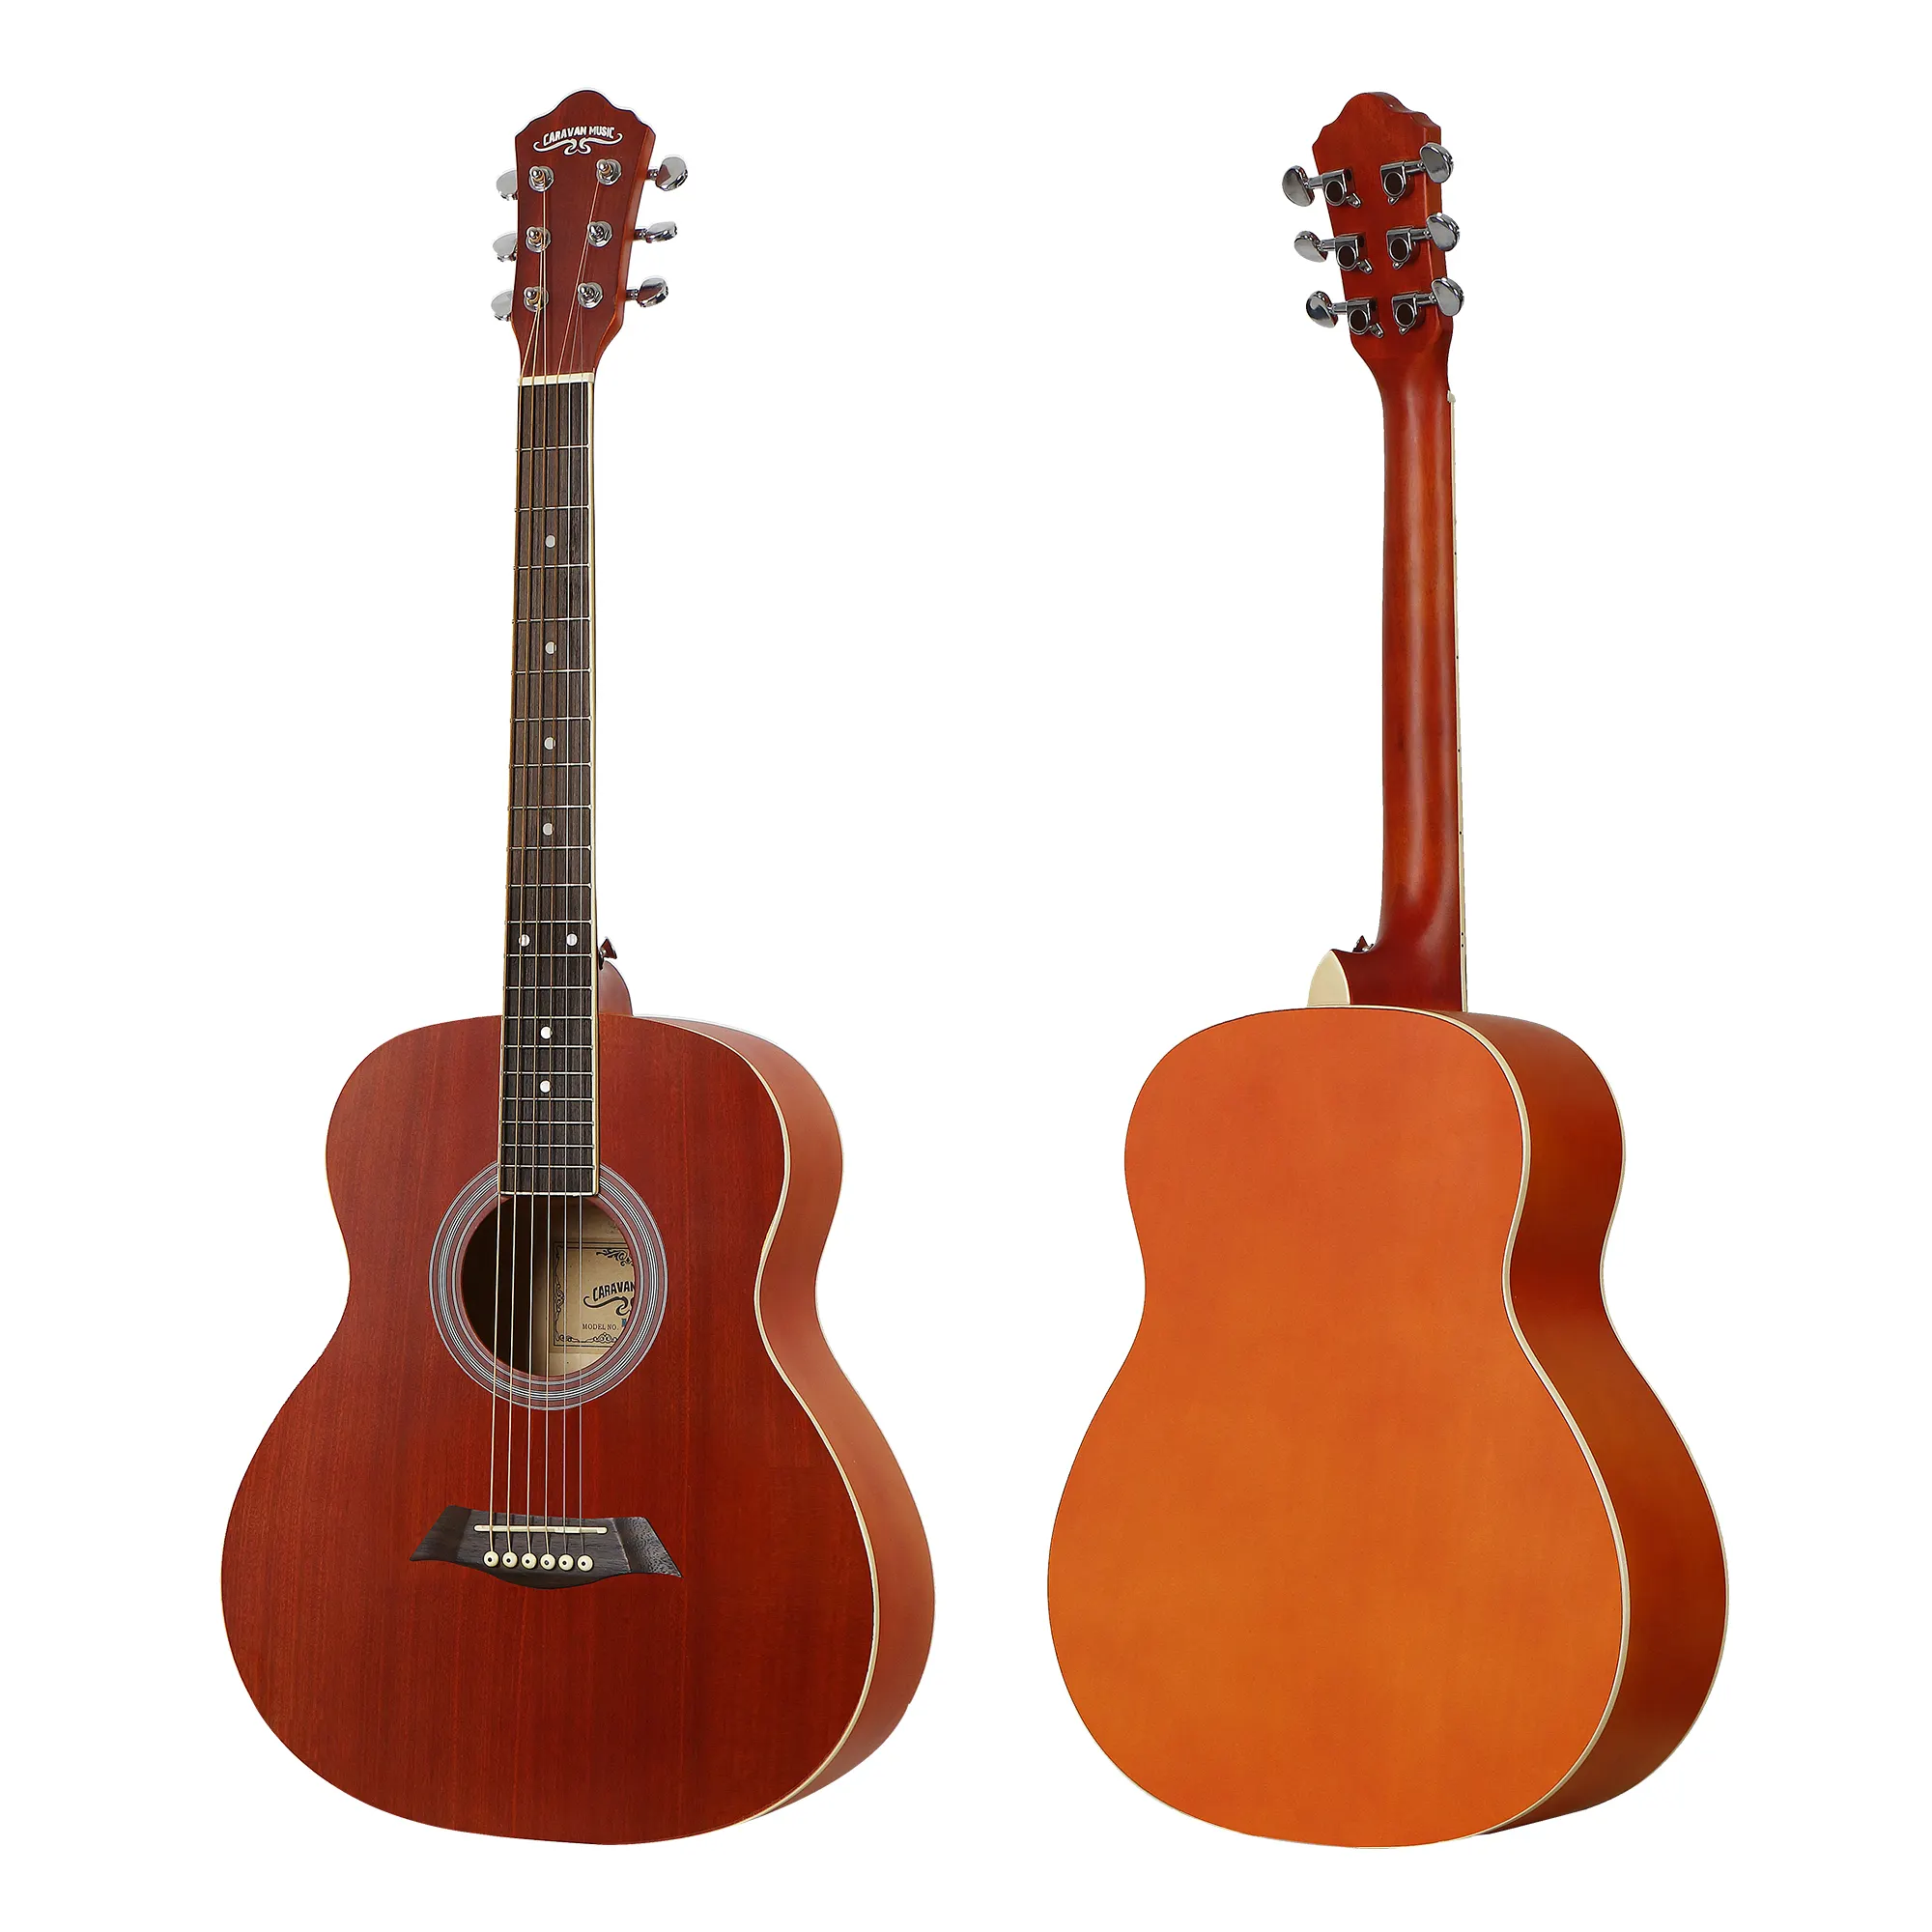 Bán hàng nóng bán buôn 37 inch vân sam Top min dân gian Acoustic Guitar người mới bắt đầu cho sinh viên